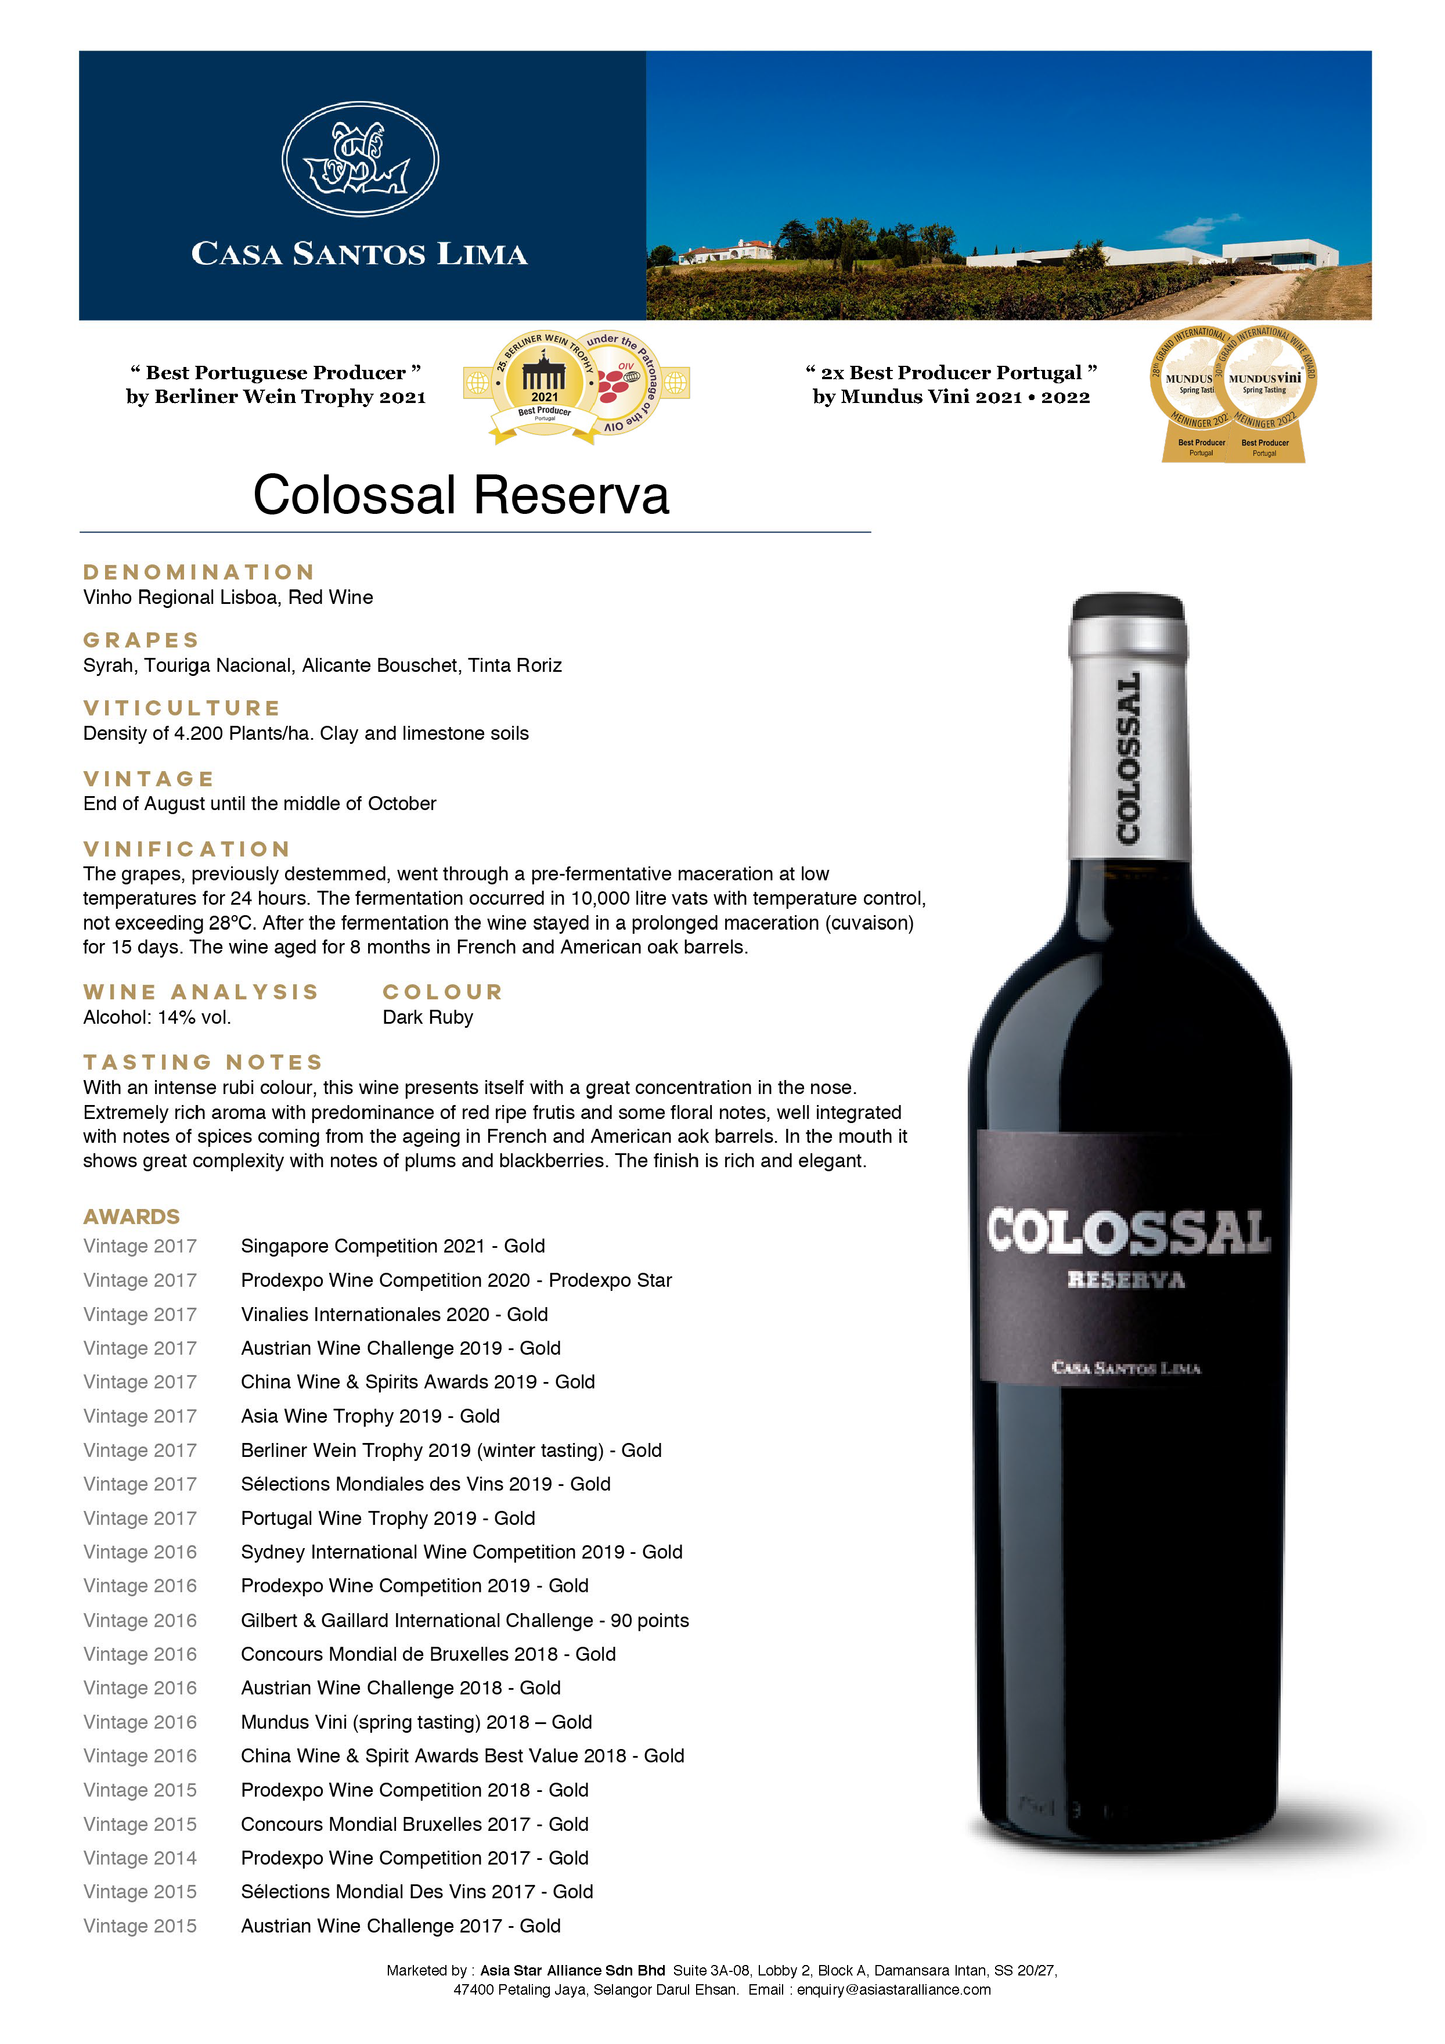 colossal-reserva-vinho-regional-lisboa-red